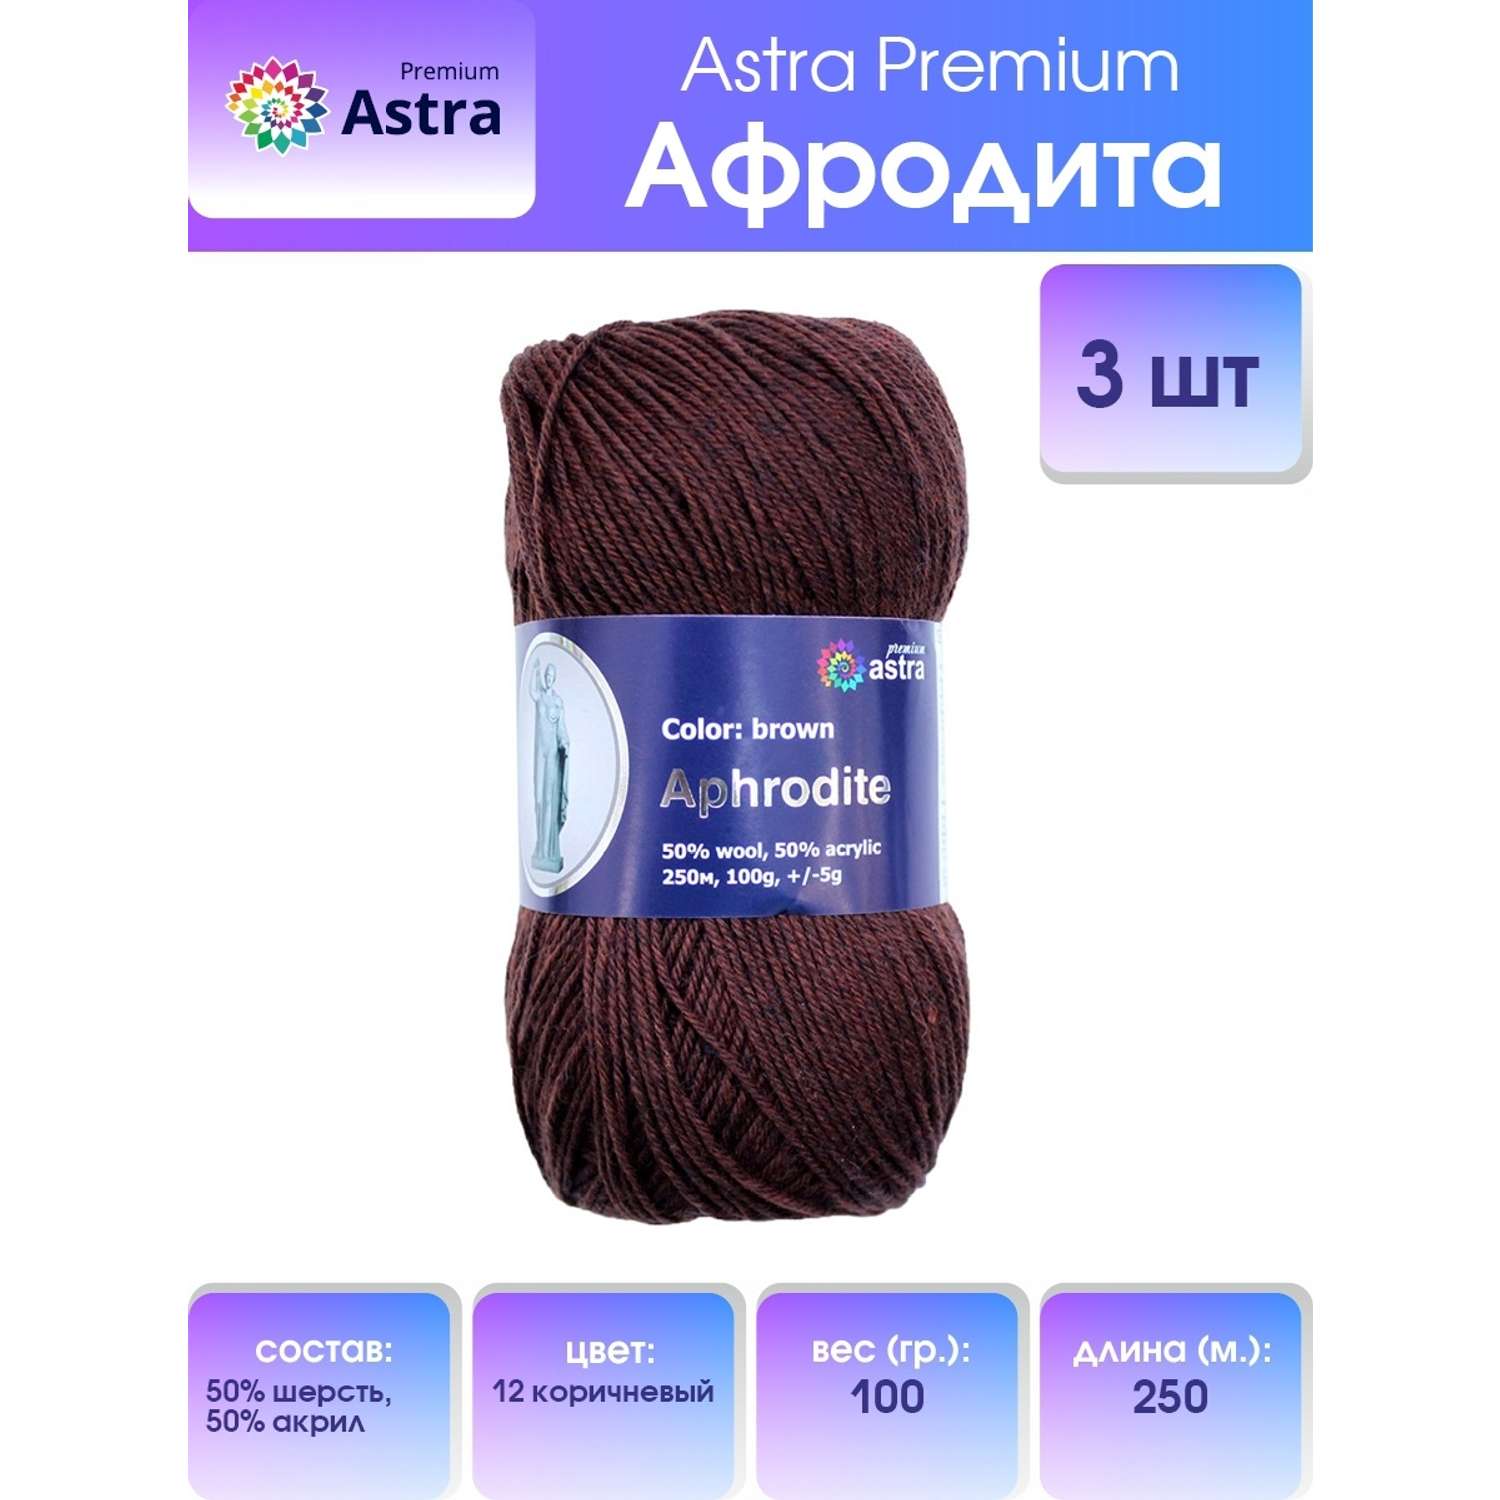 Пряжа Astra Premium Афродита полушерстяная 100 г 250 м 01 12 коричневый 3 мотка - фото 1